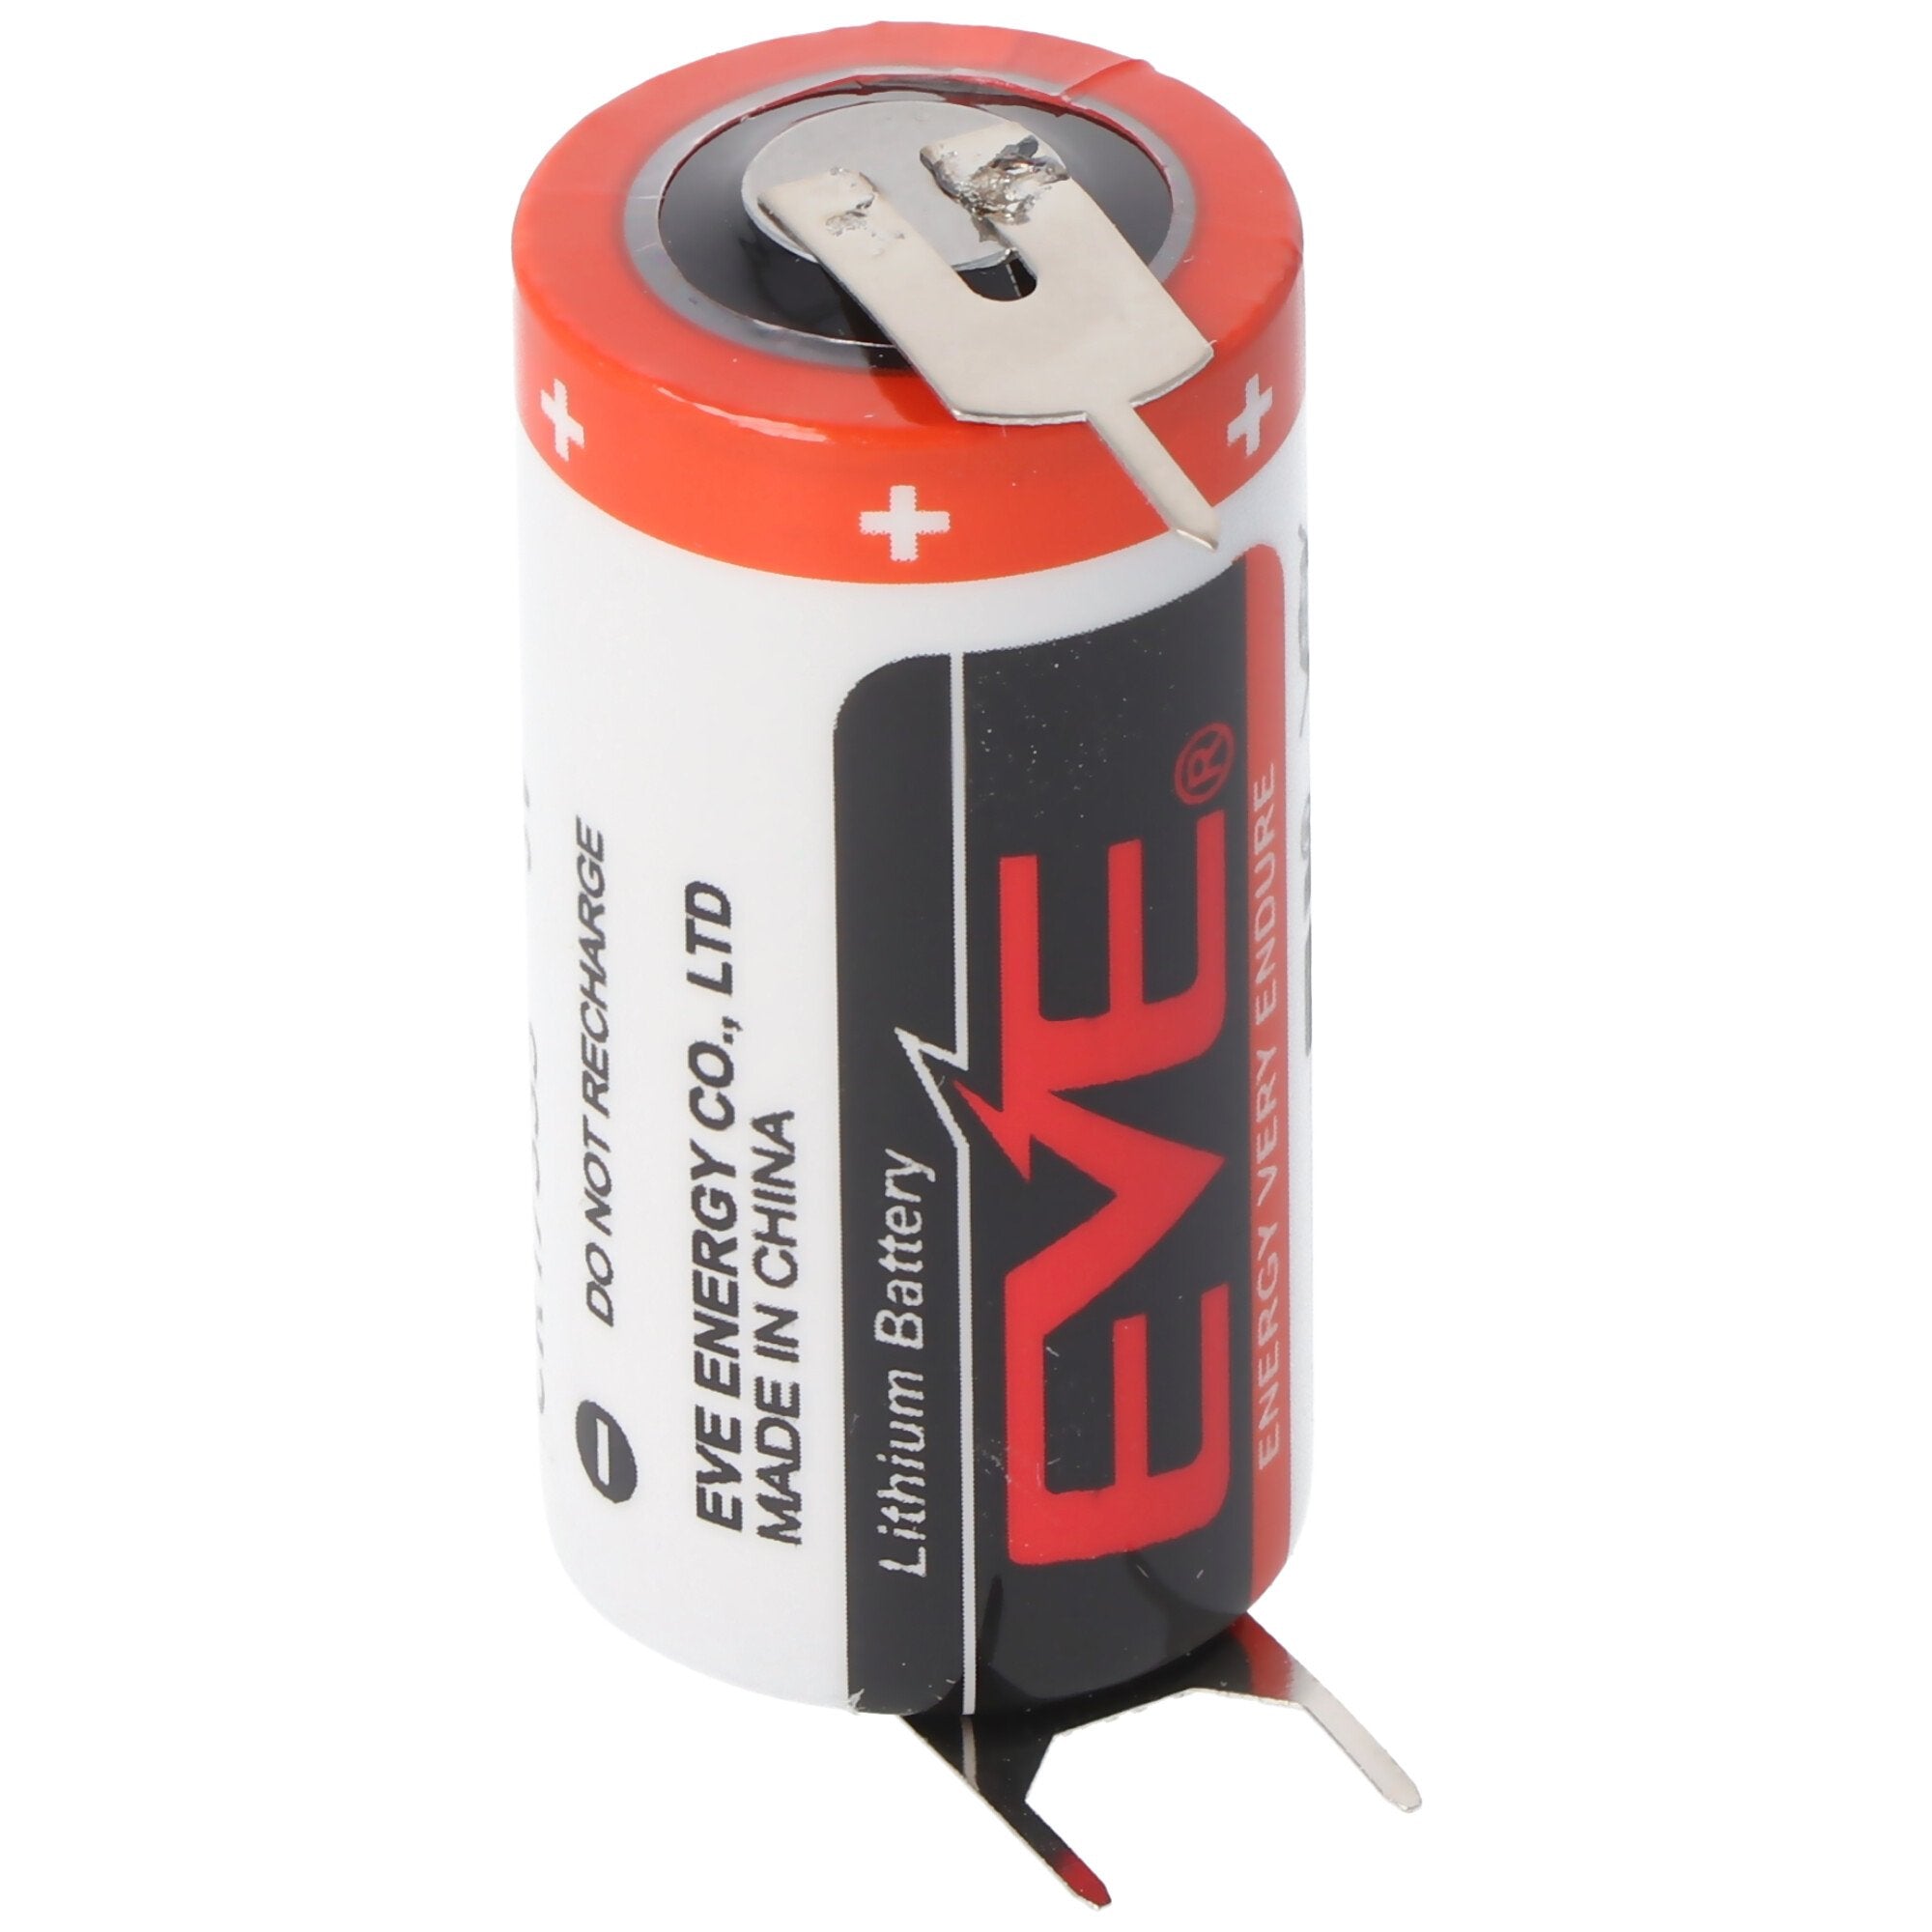 EVE CR17335 batterij maat 2 / 3A met 3 volt spanning en 1550 mAh capaciteit, afmetingen 33,5 x 17 mm